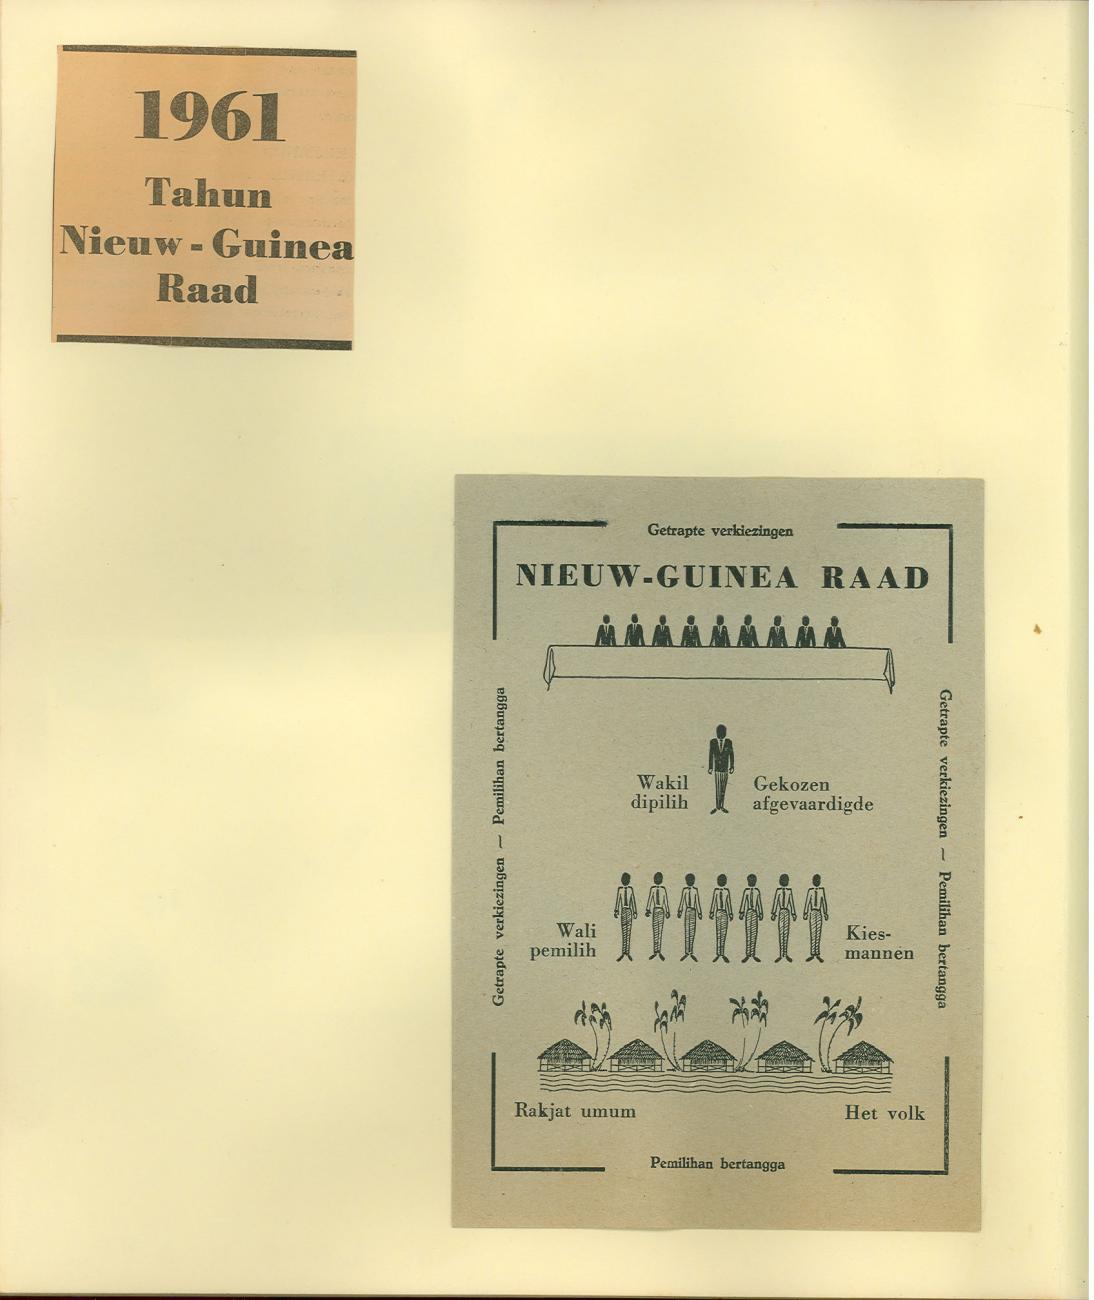 BD/83/26 - 
Informatie in Nederlands en Bahasa over de verkiezing van de Nieuw-Guinea Raad in 1961
